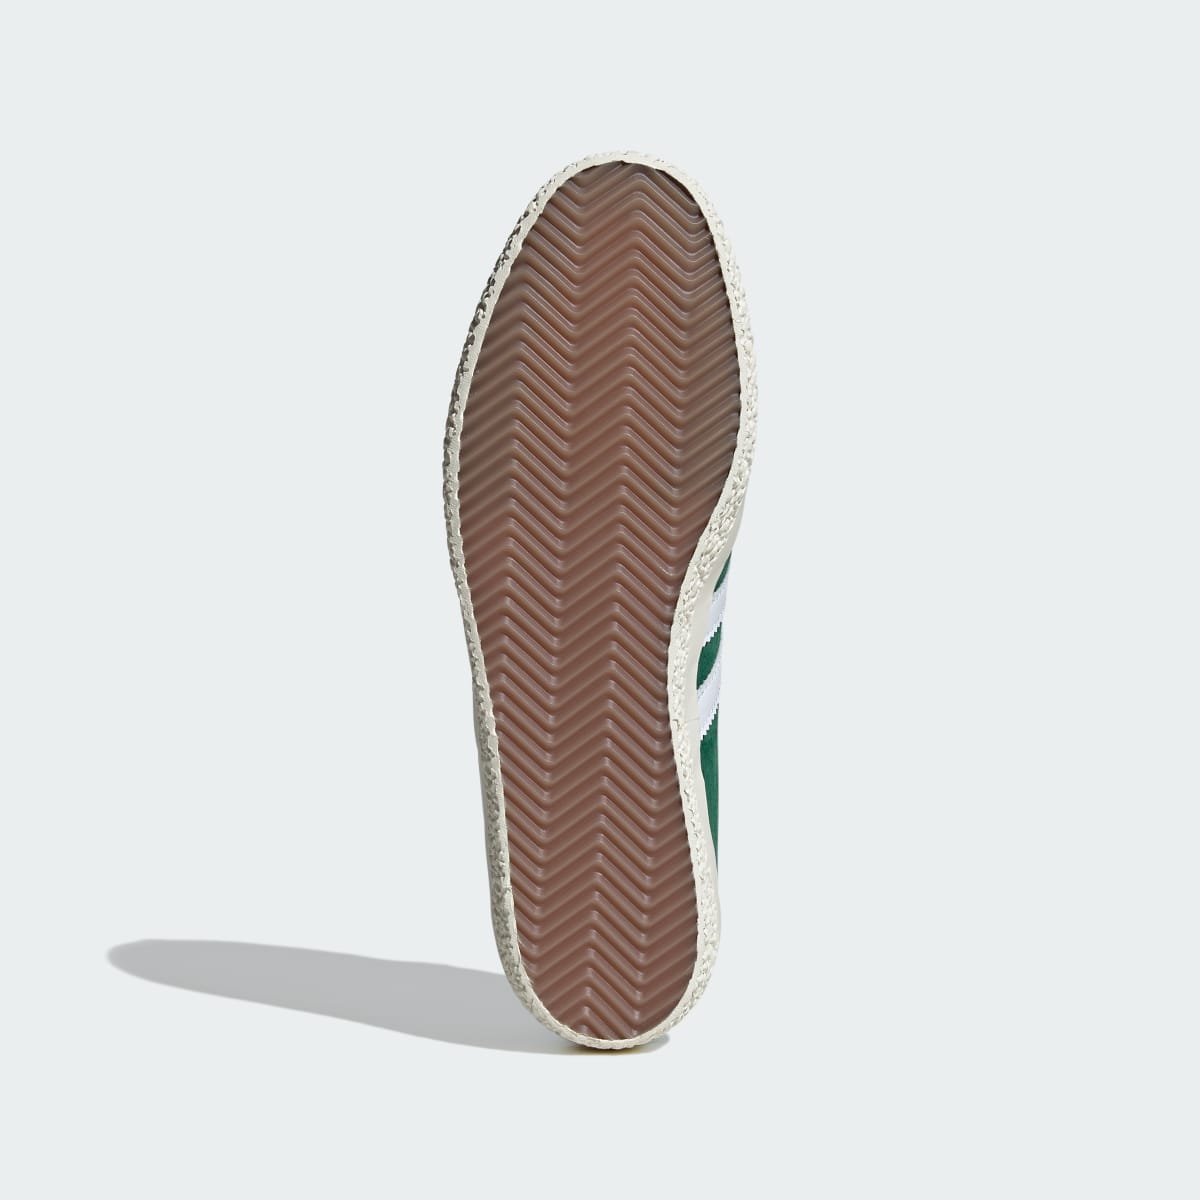 Adidas Gazelle SPZL Shoes. 4